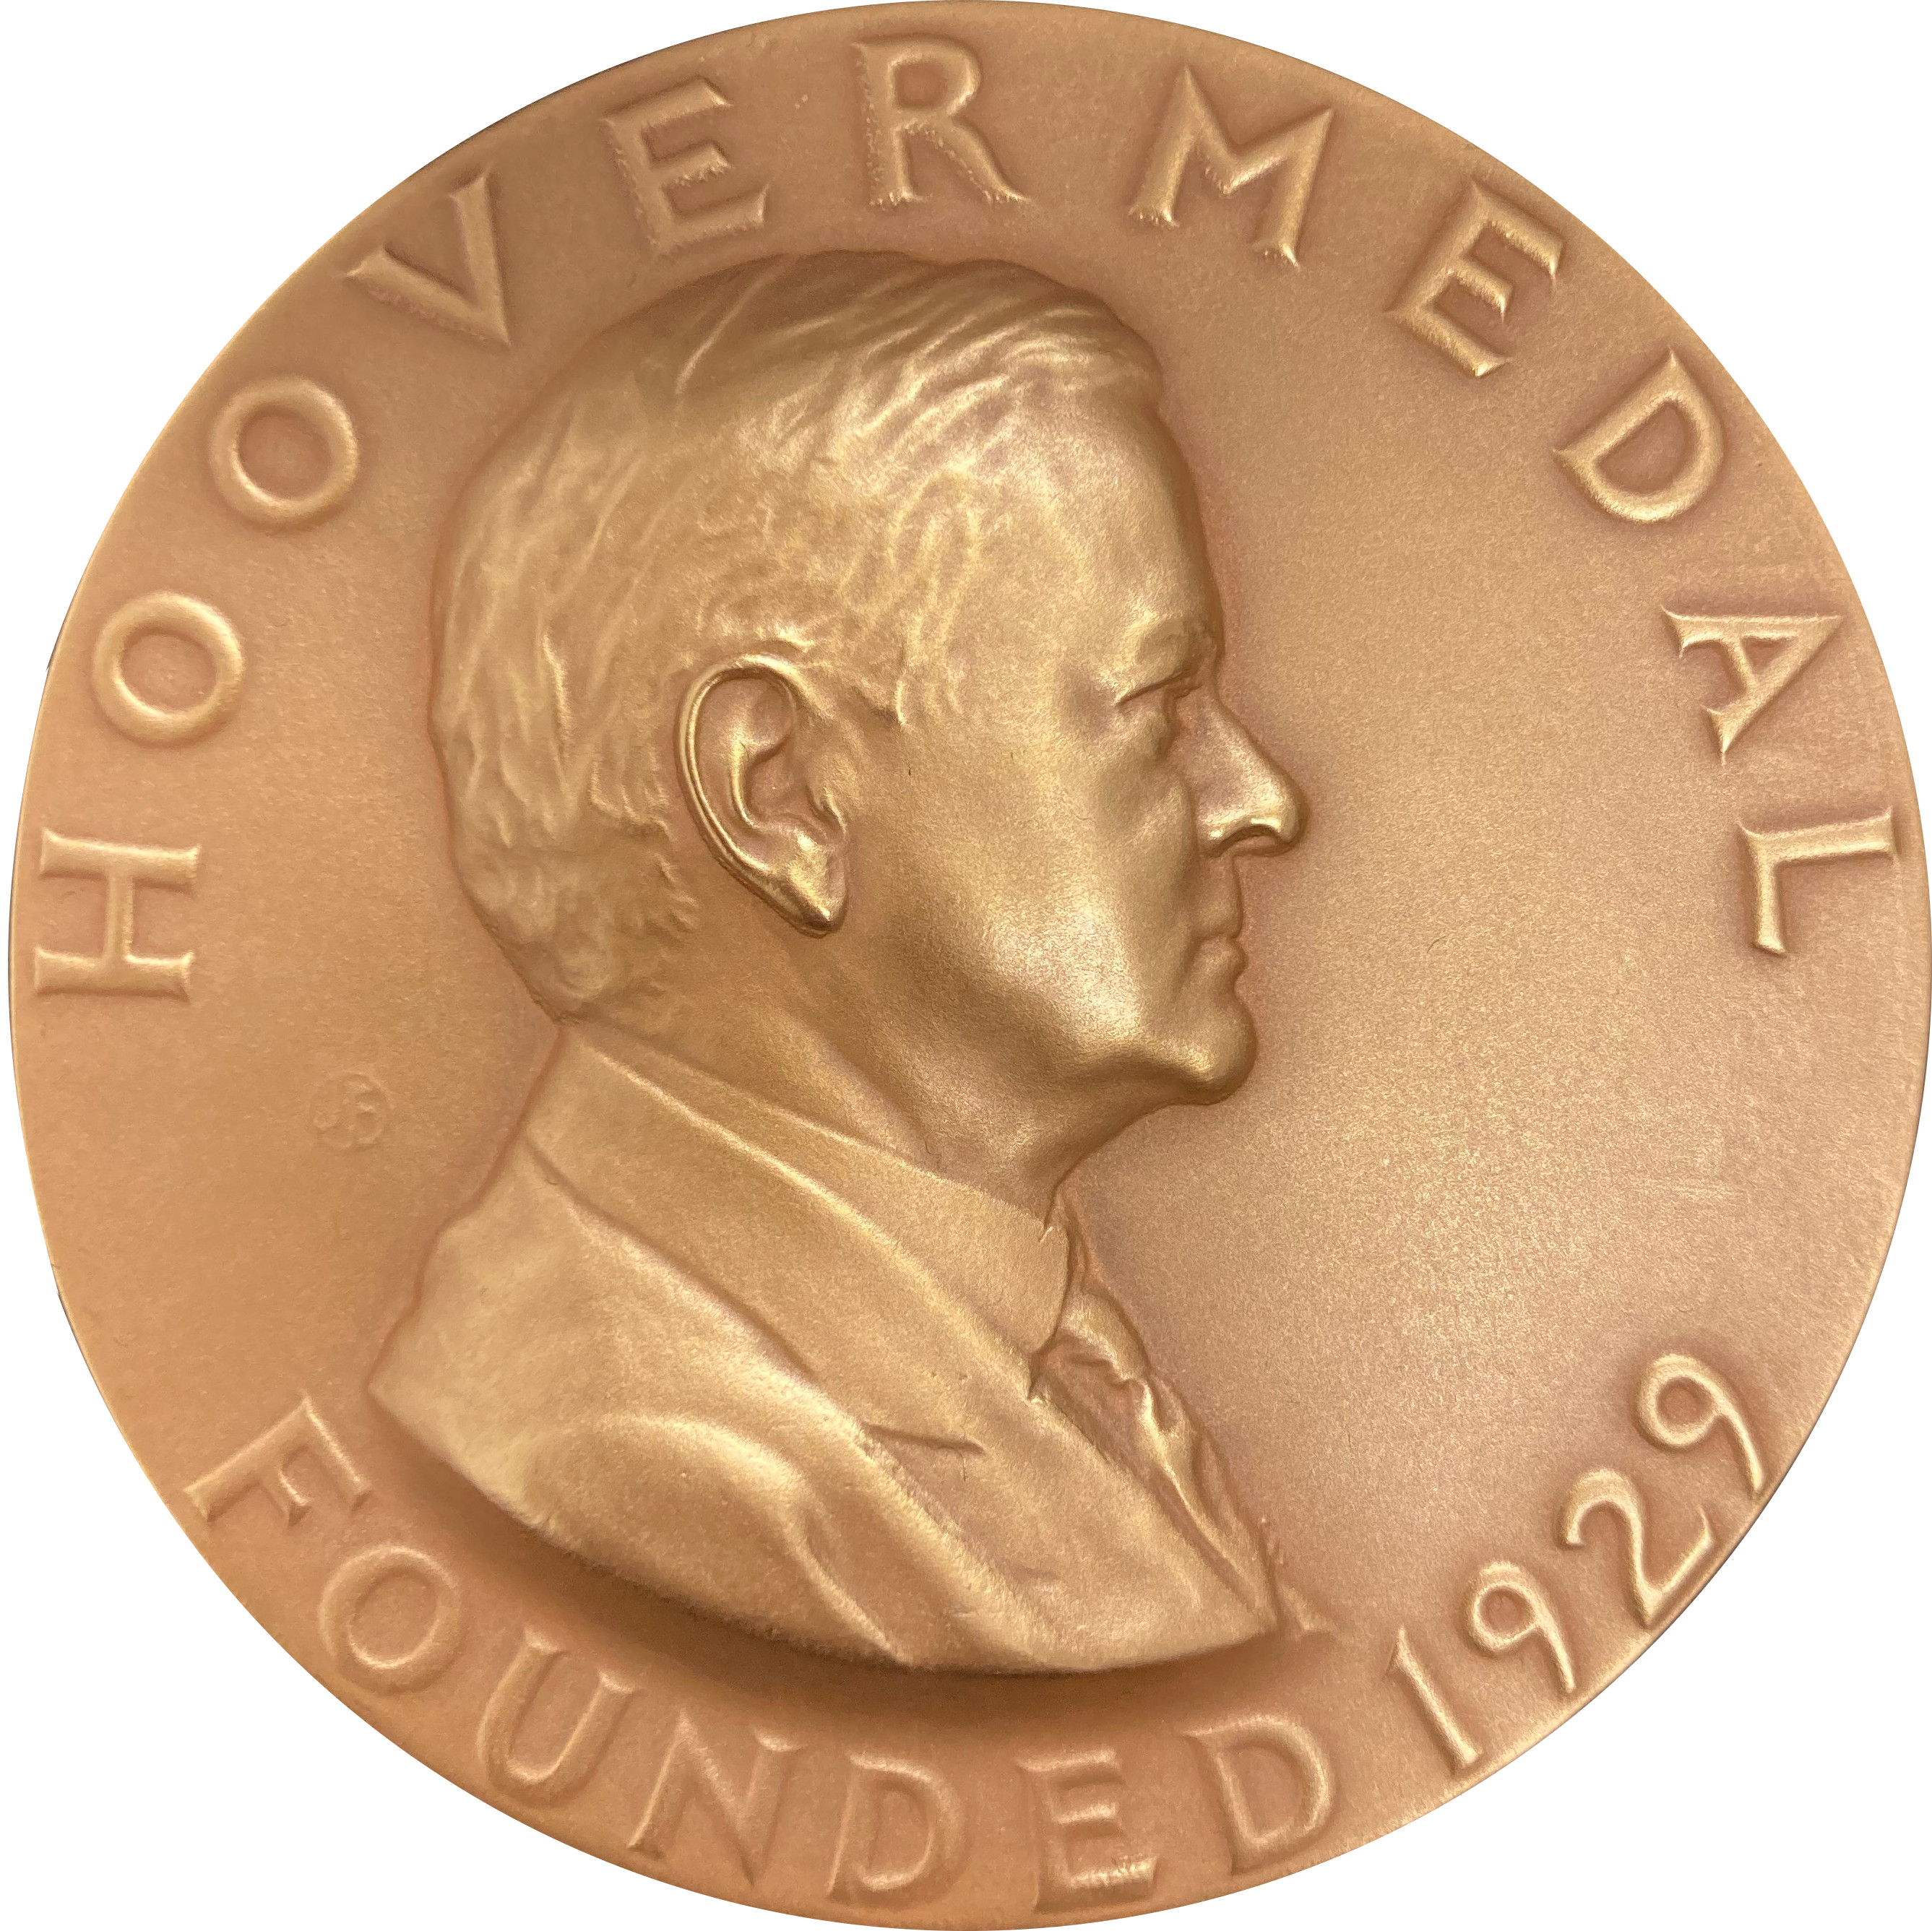 hoover medal